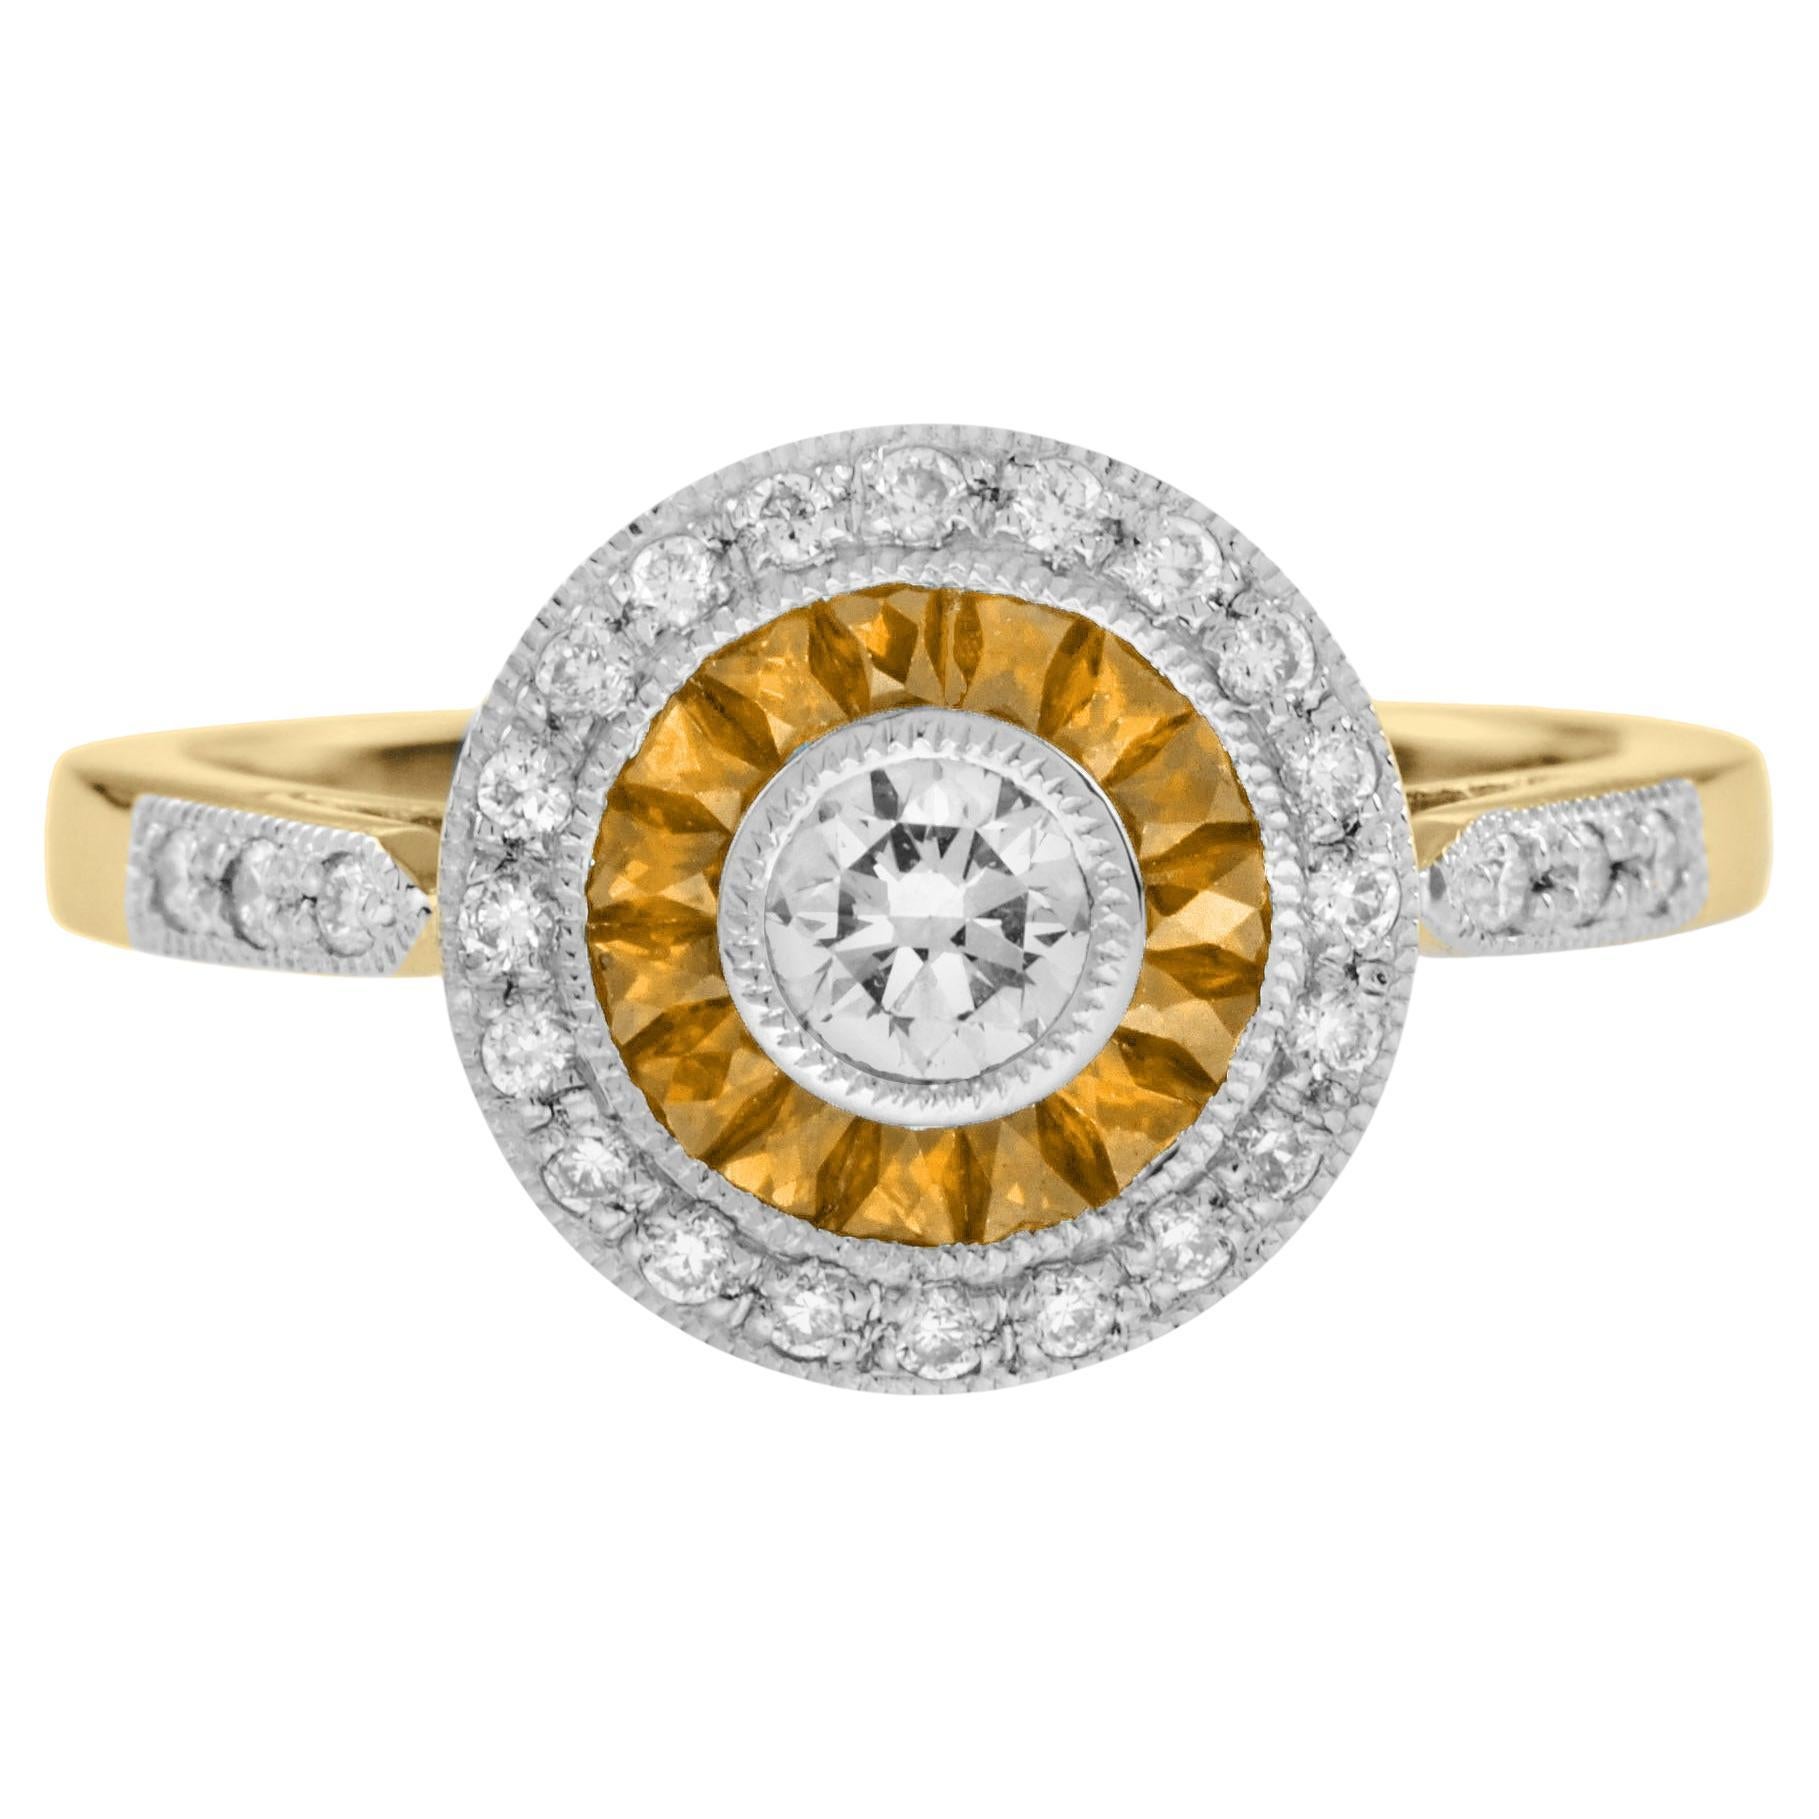 Bague cible de style Art déco en or bicolore 18 carats avec diamants et saphirs jaunes